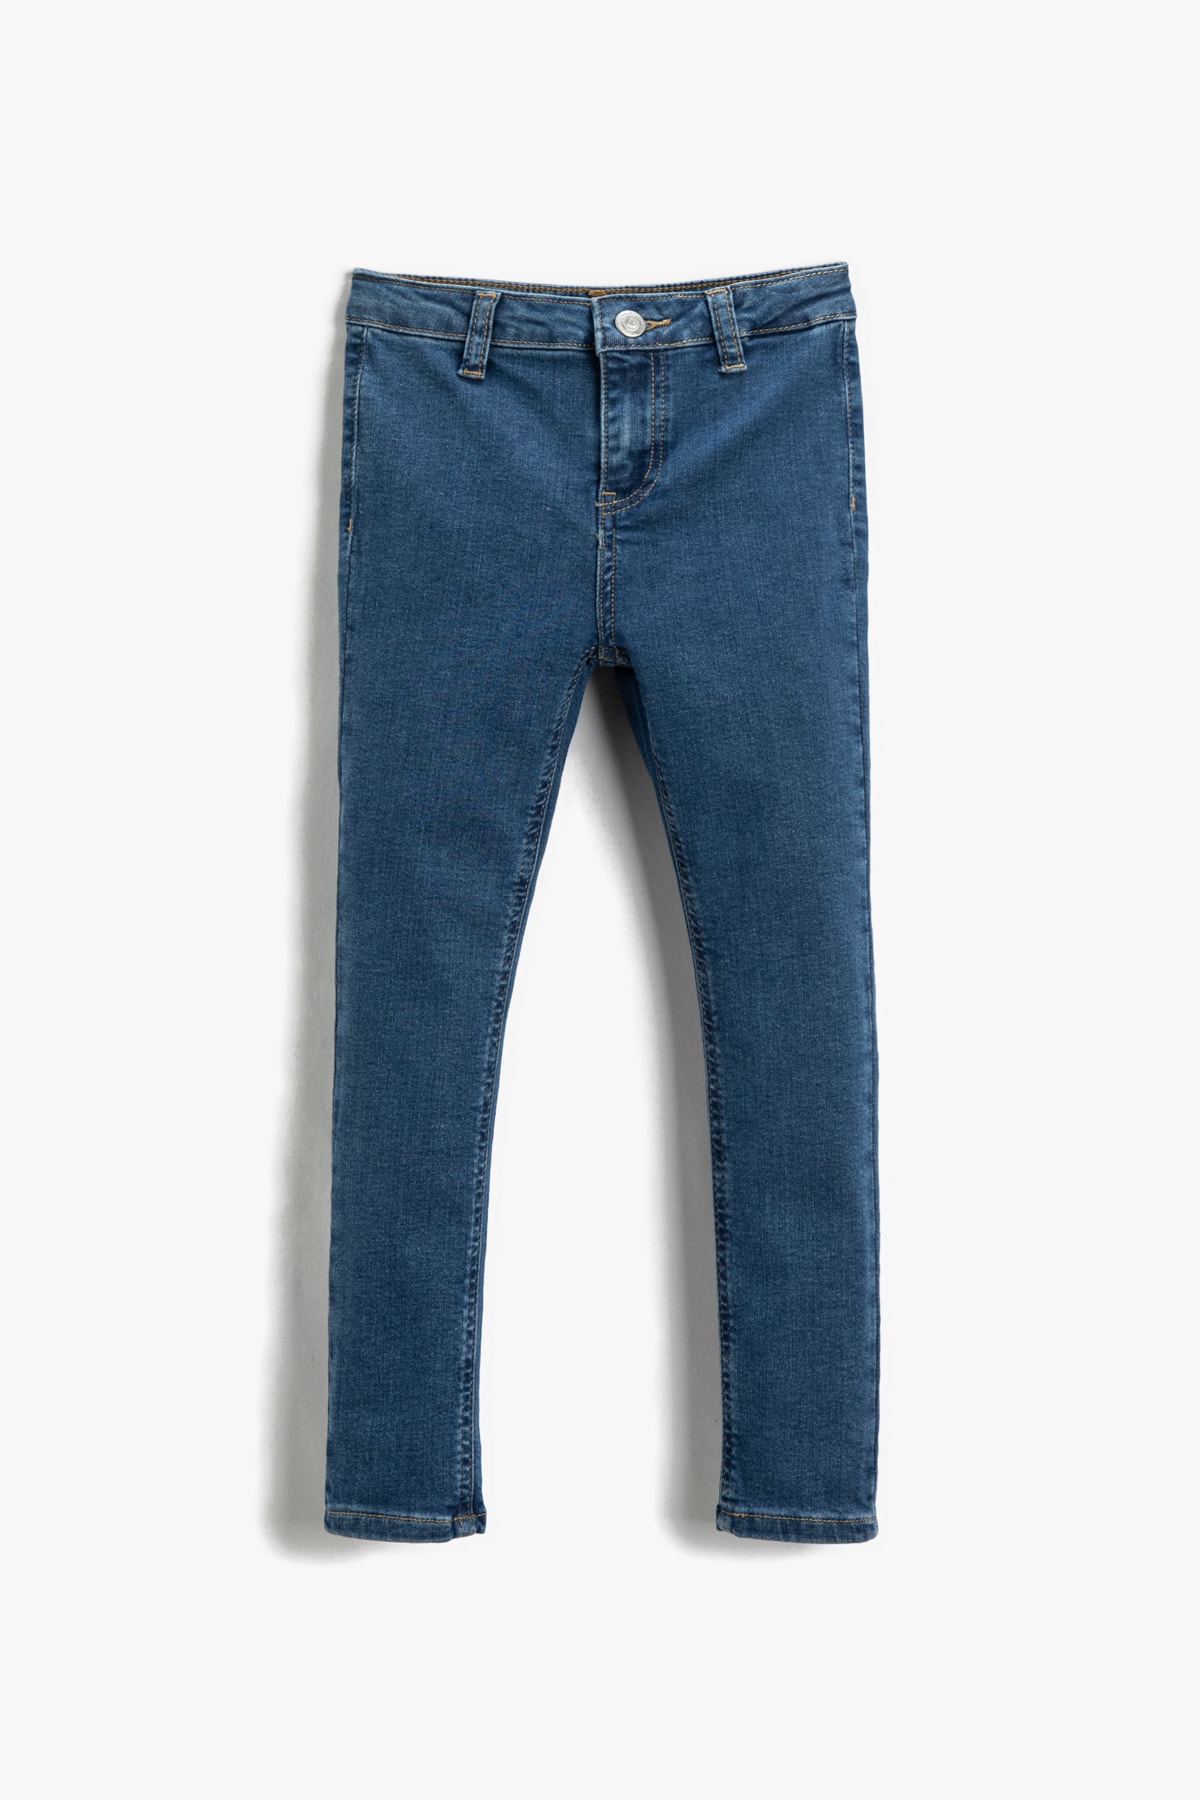 Koton Jeans Blau Straight